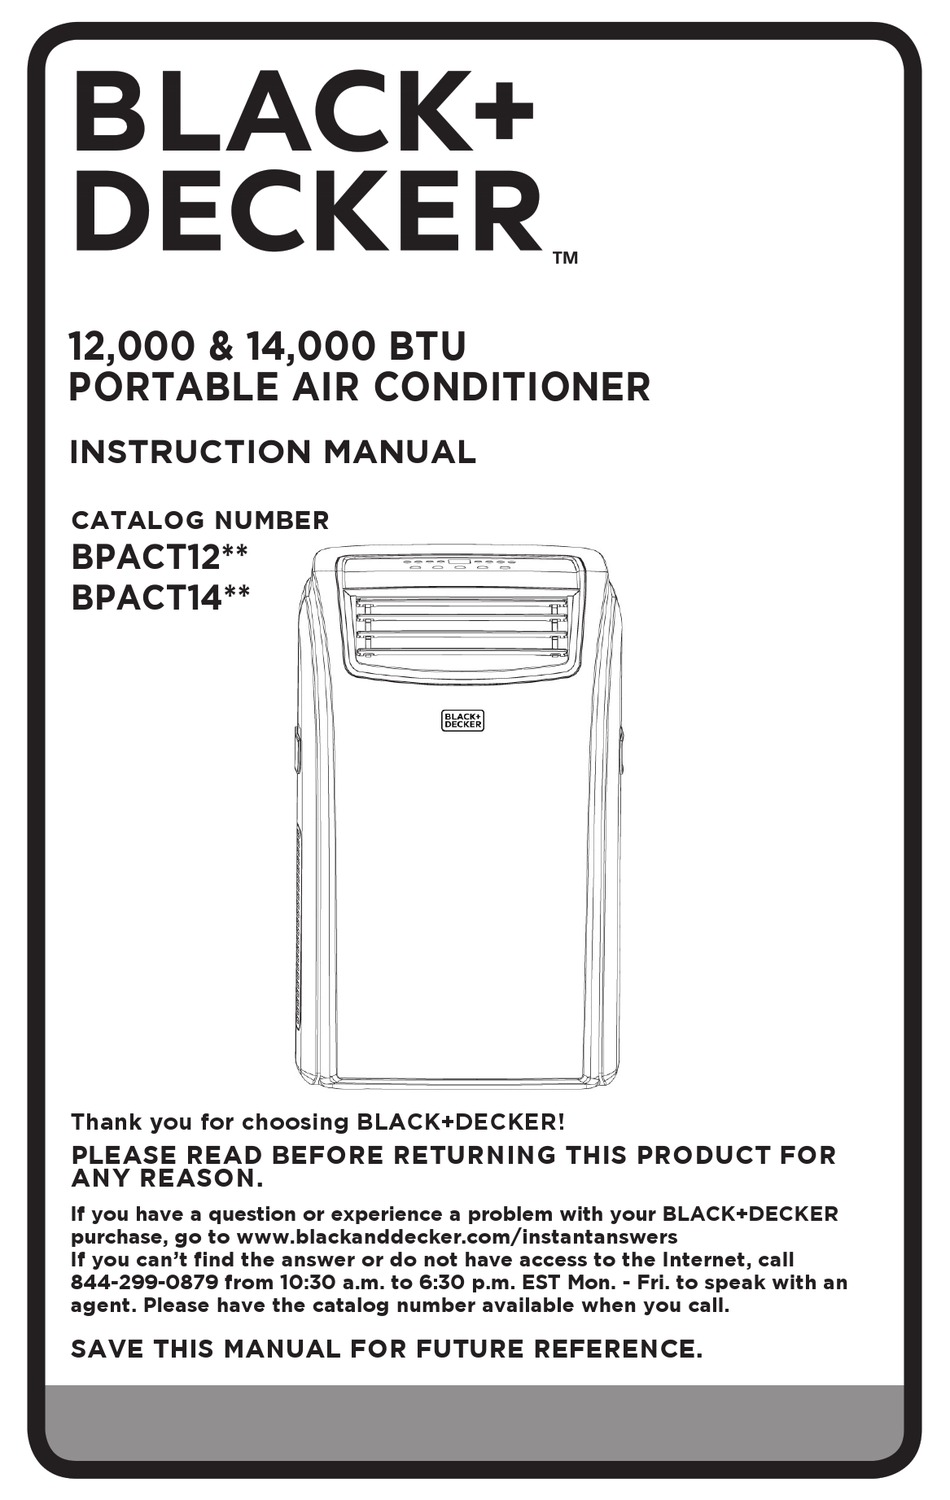 Black Decker Air Conditioner Manual - Lg Lw1516er 15 000 Btu Window Air